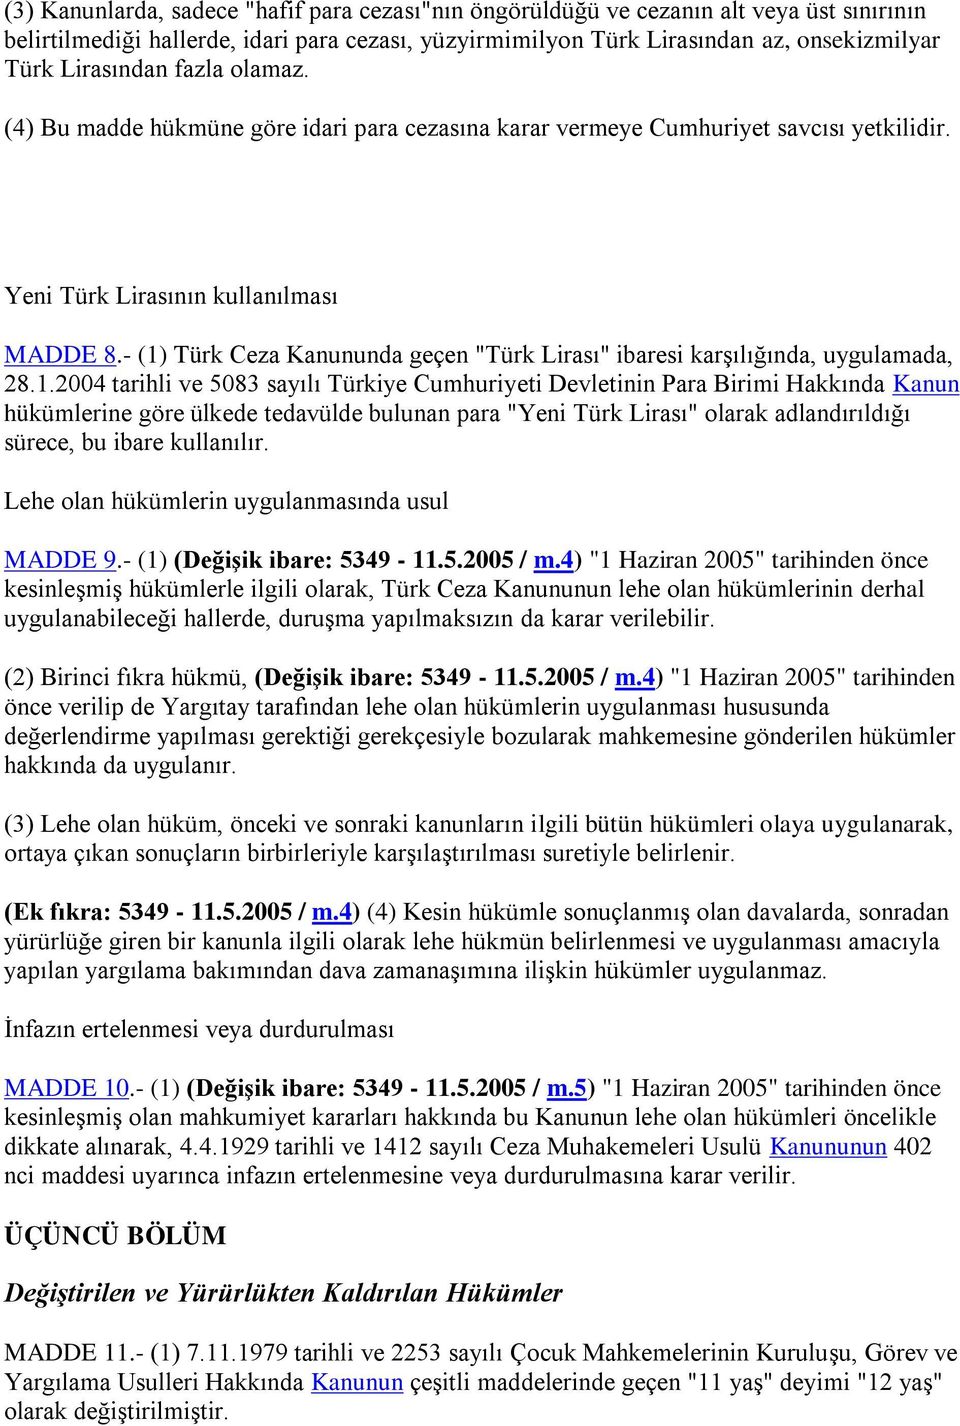 - (1) Türk Ceza Kanununda geçen "Türk Lirası" ibaresi karşılığında, uygulamada, 28.1.2004 tarihli ve 5083 sayılı Türkiye Cumhuriyeti Devletinin Para Birimi Hakkında Kanun hükümlerine göre ülkede